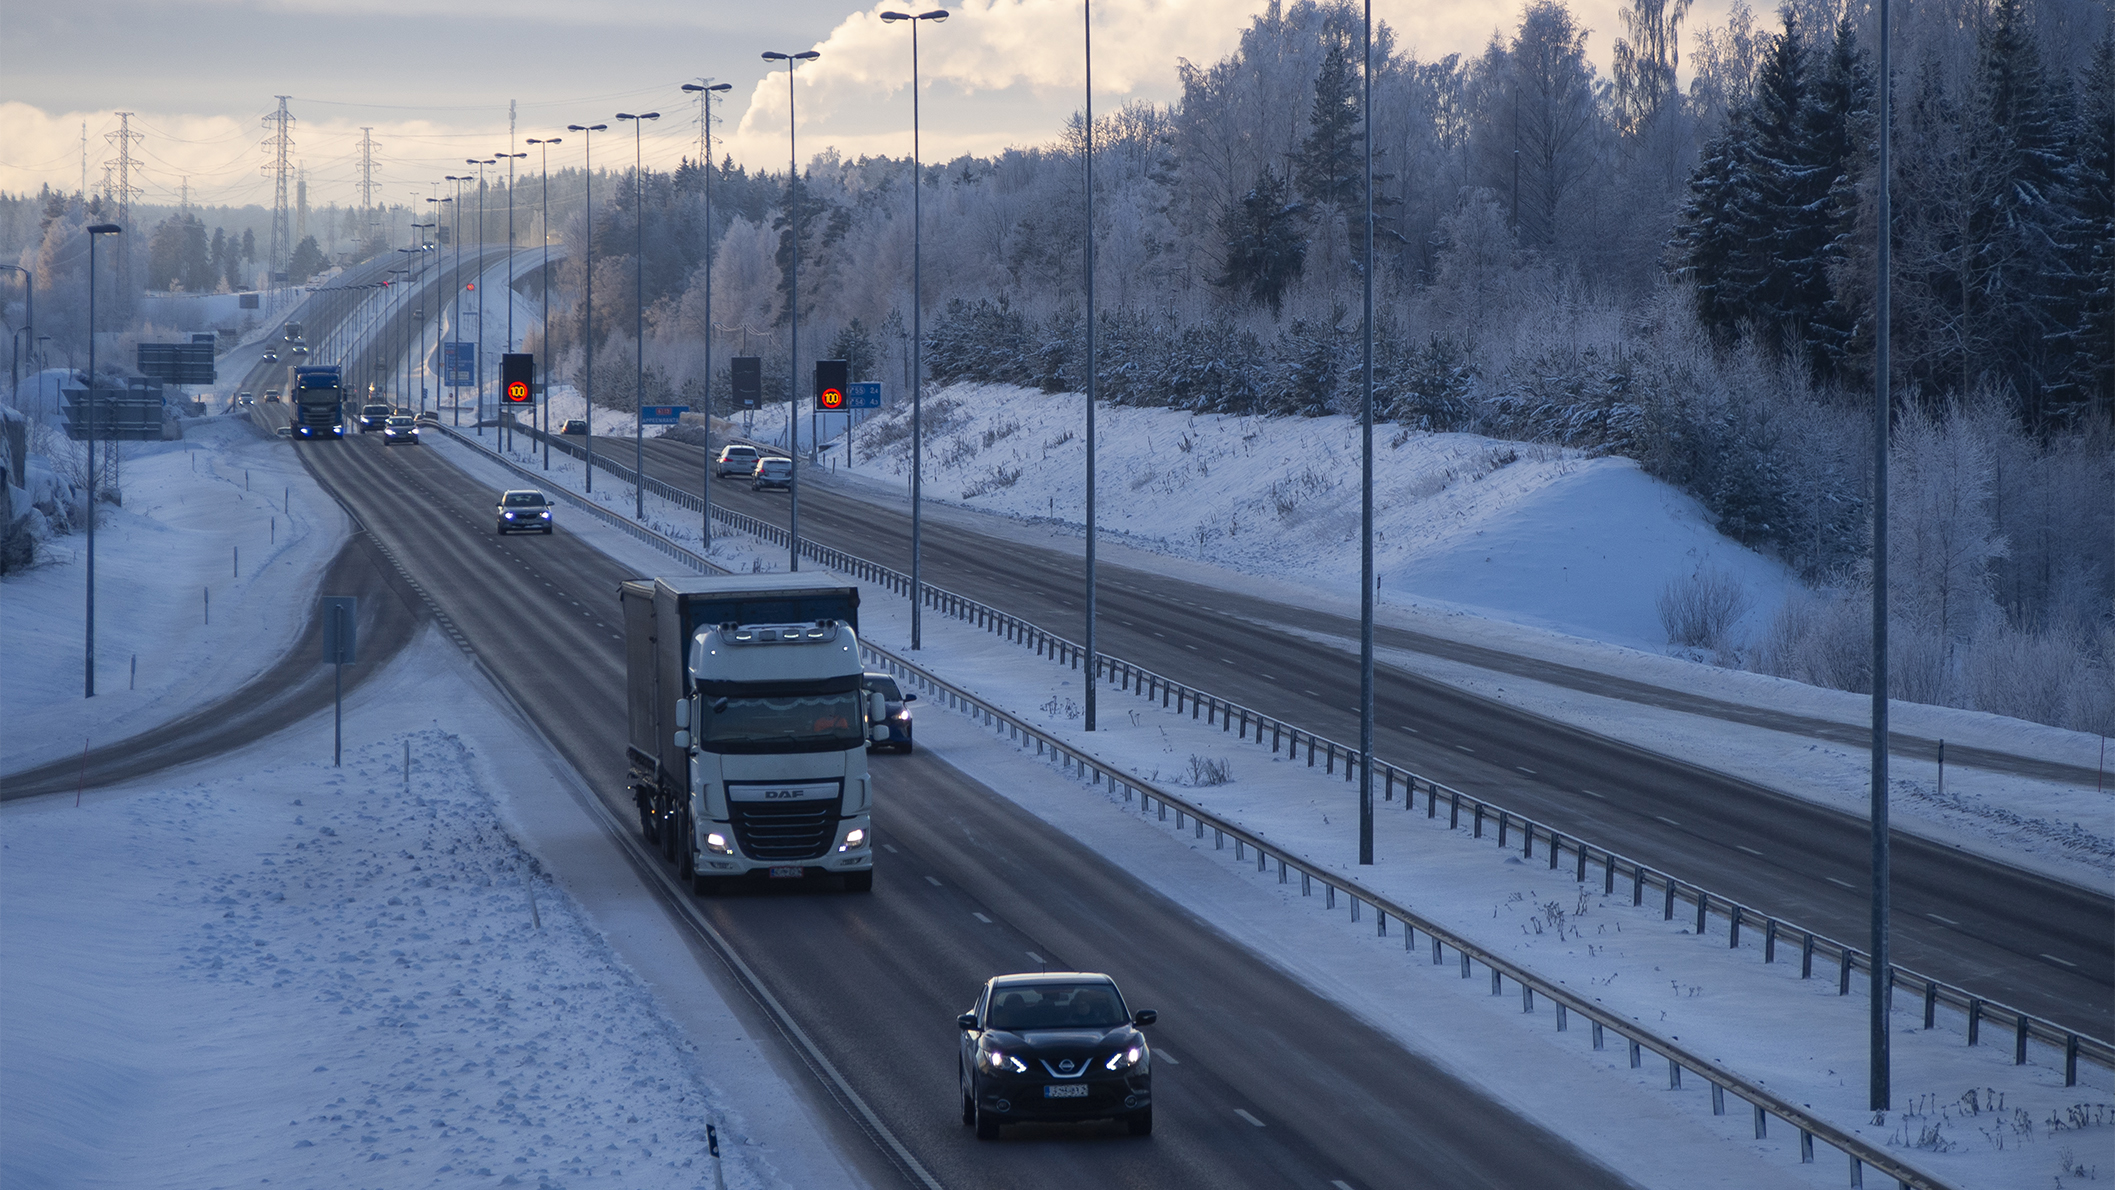 Talvinen maisema valtatie 6:sta. Tiellä liikkuu henkilöautoja sekä kuorma-autoja.